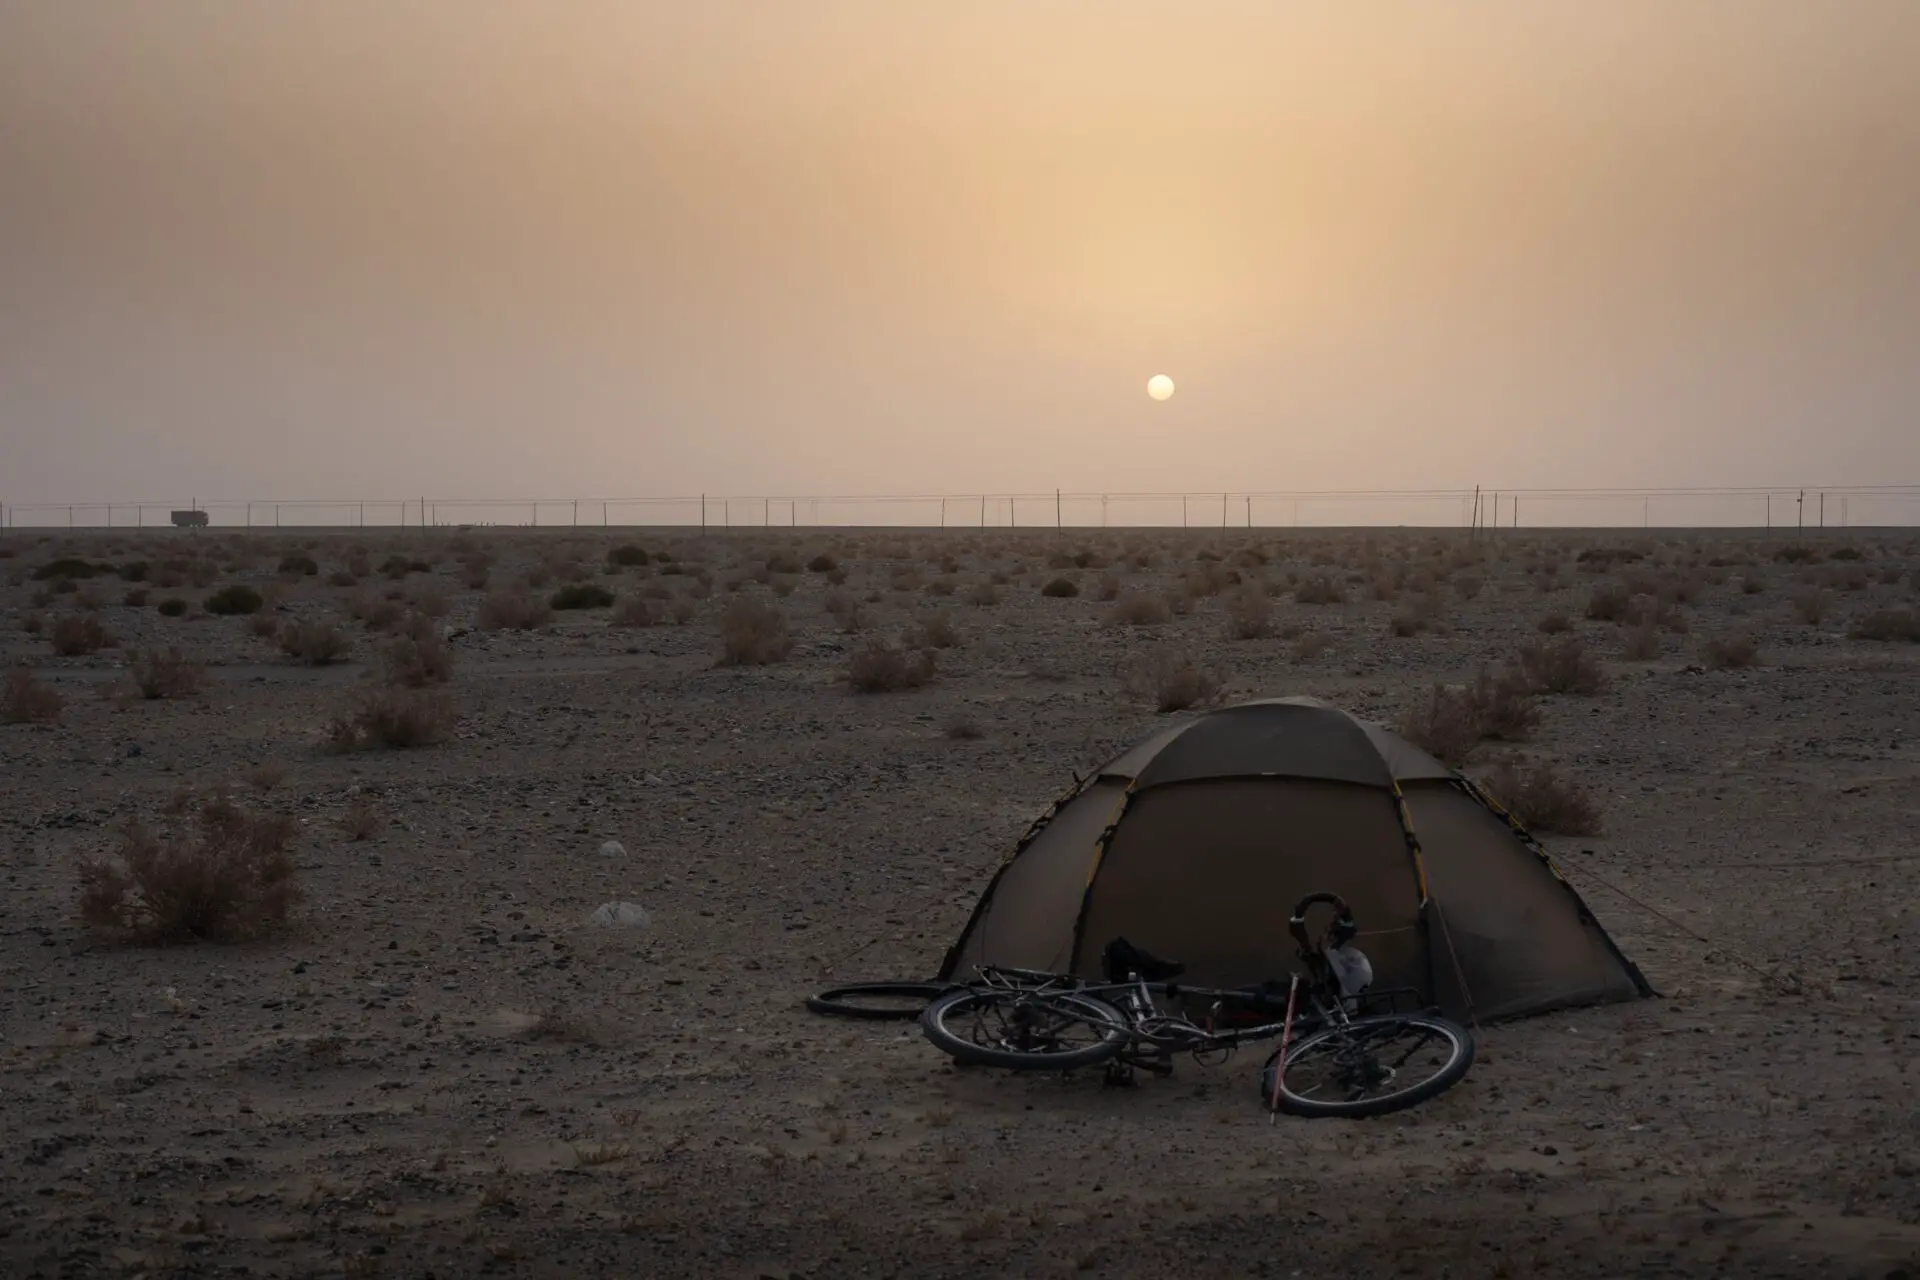 cycle touring taklamakan desert